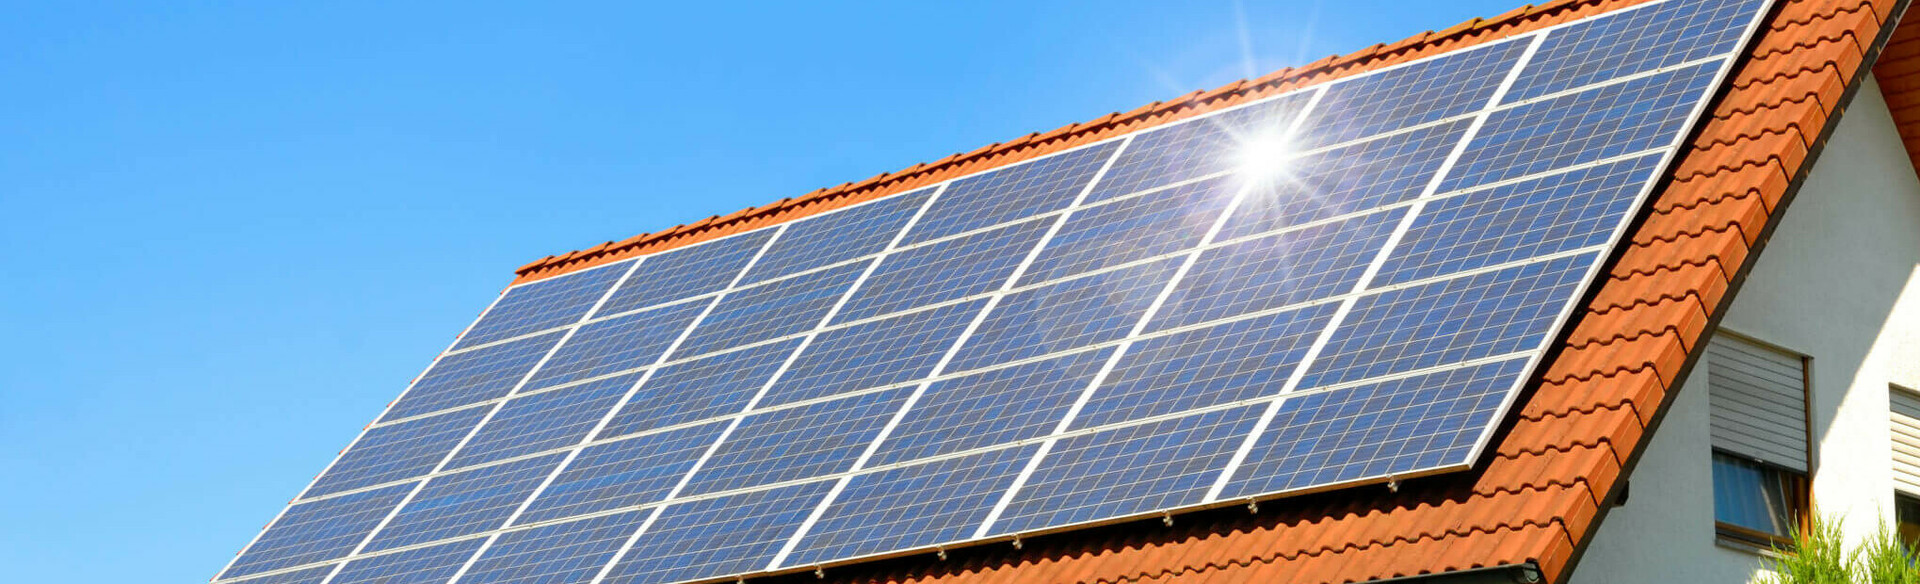 Photovoltaik-Anlage auf dem Dach eines Einfamilienhauses